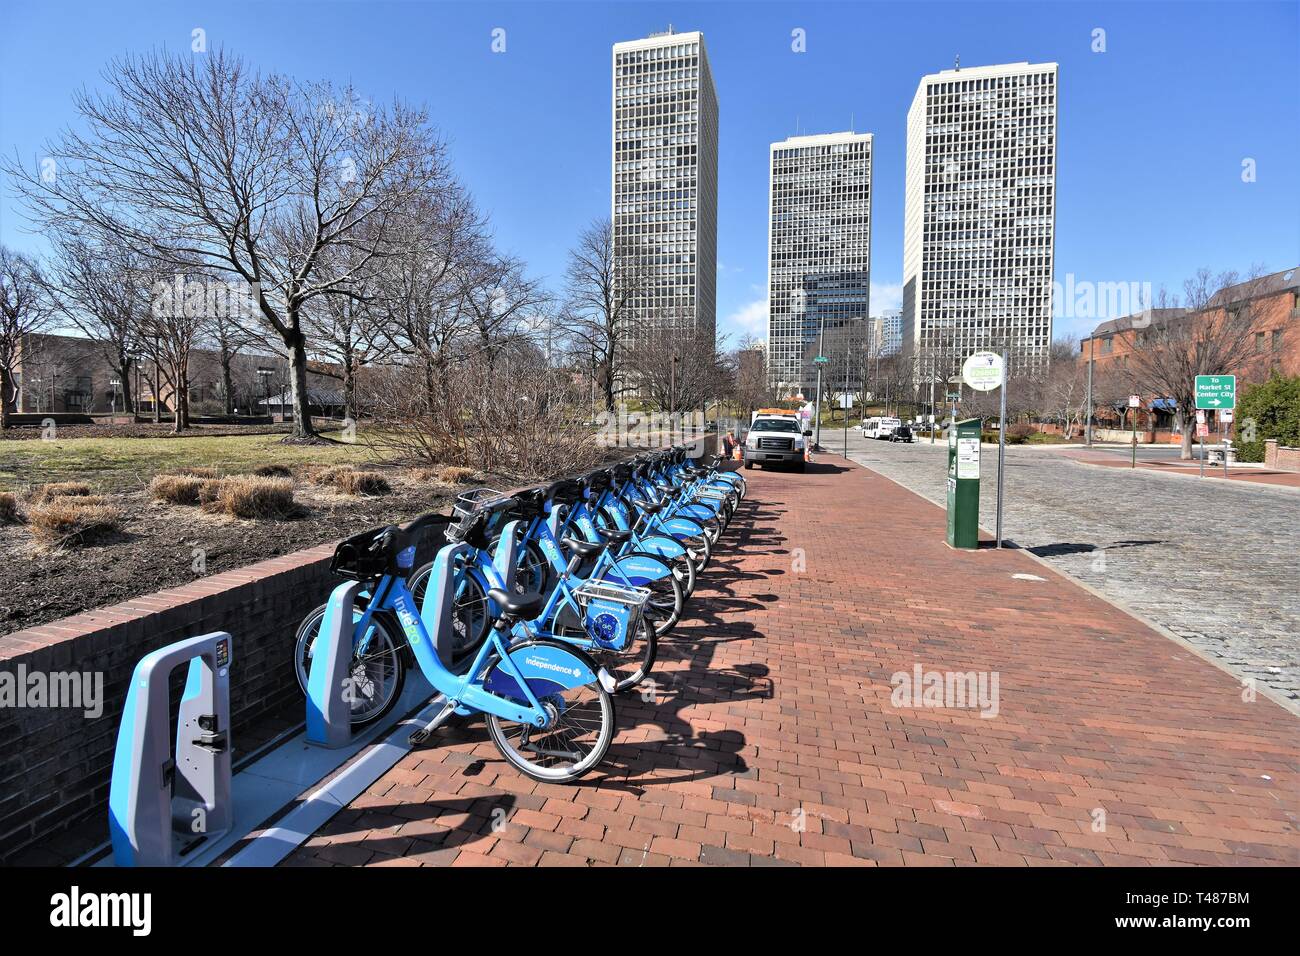 Fahrradverleih für die Öffentlichkeit in Philadelphia auf Verkehrsüberlastung und Umweltverschmutzung und helfen mit dem grossen Parkplatz Probleme für Touristen zu schneiden Stockfoto